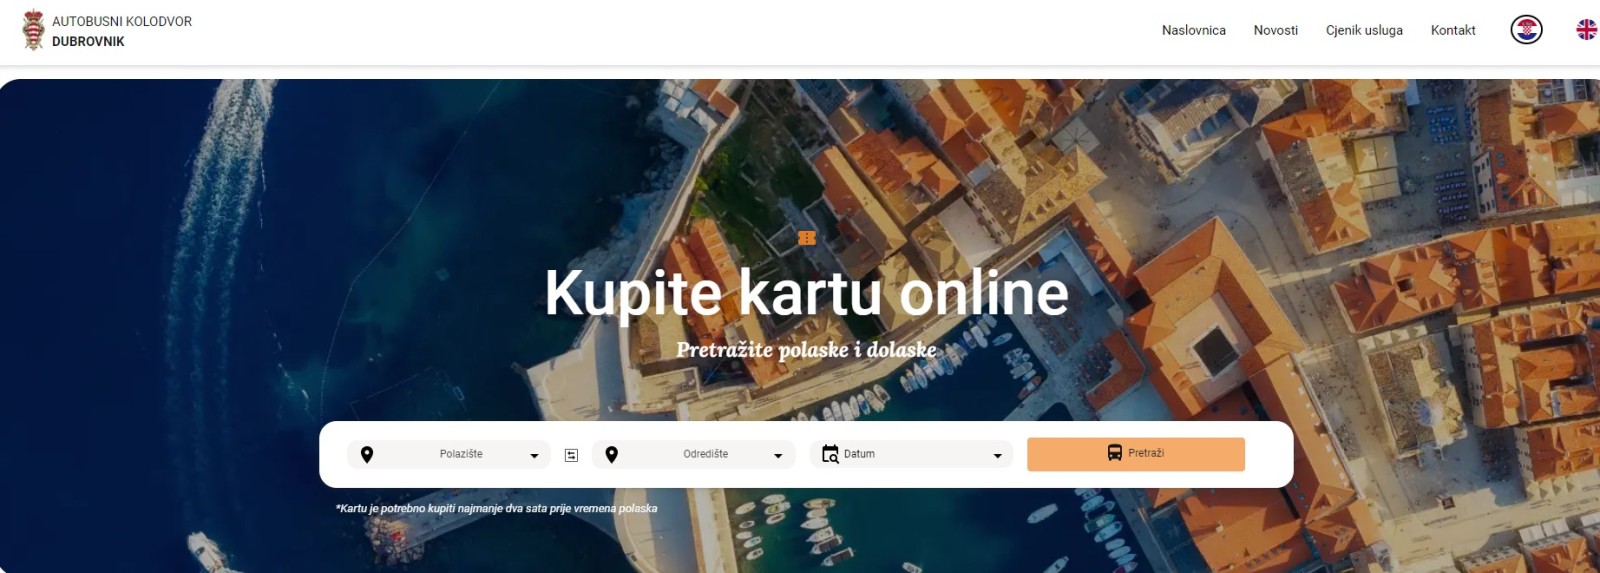 Autobusni kolodvor Dubrovnik ima novu internetsku stranicu